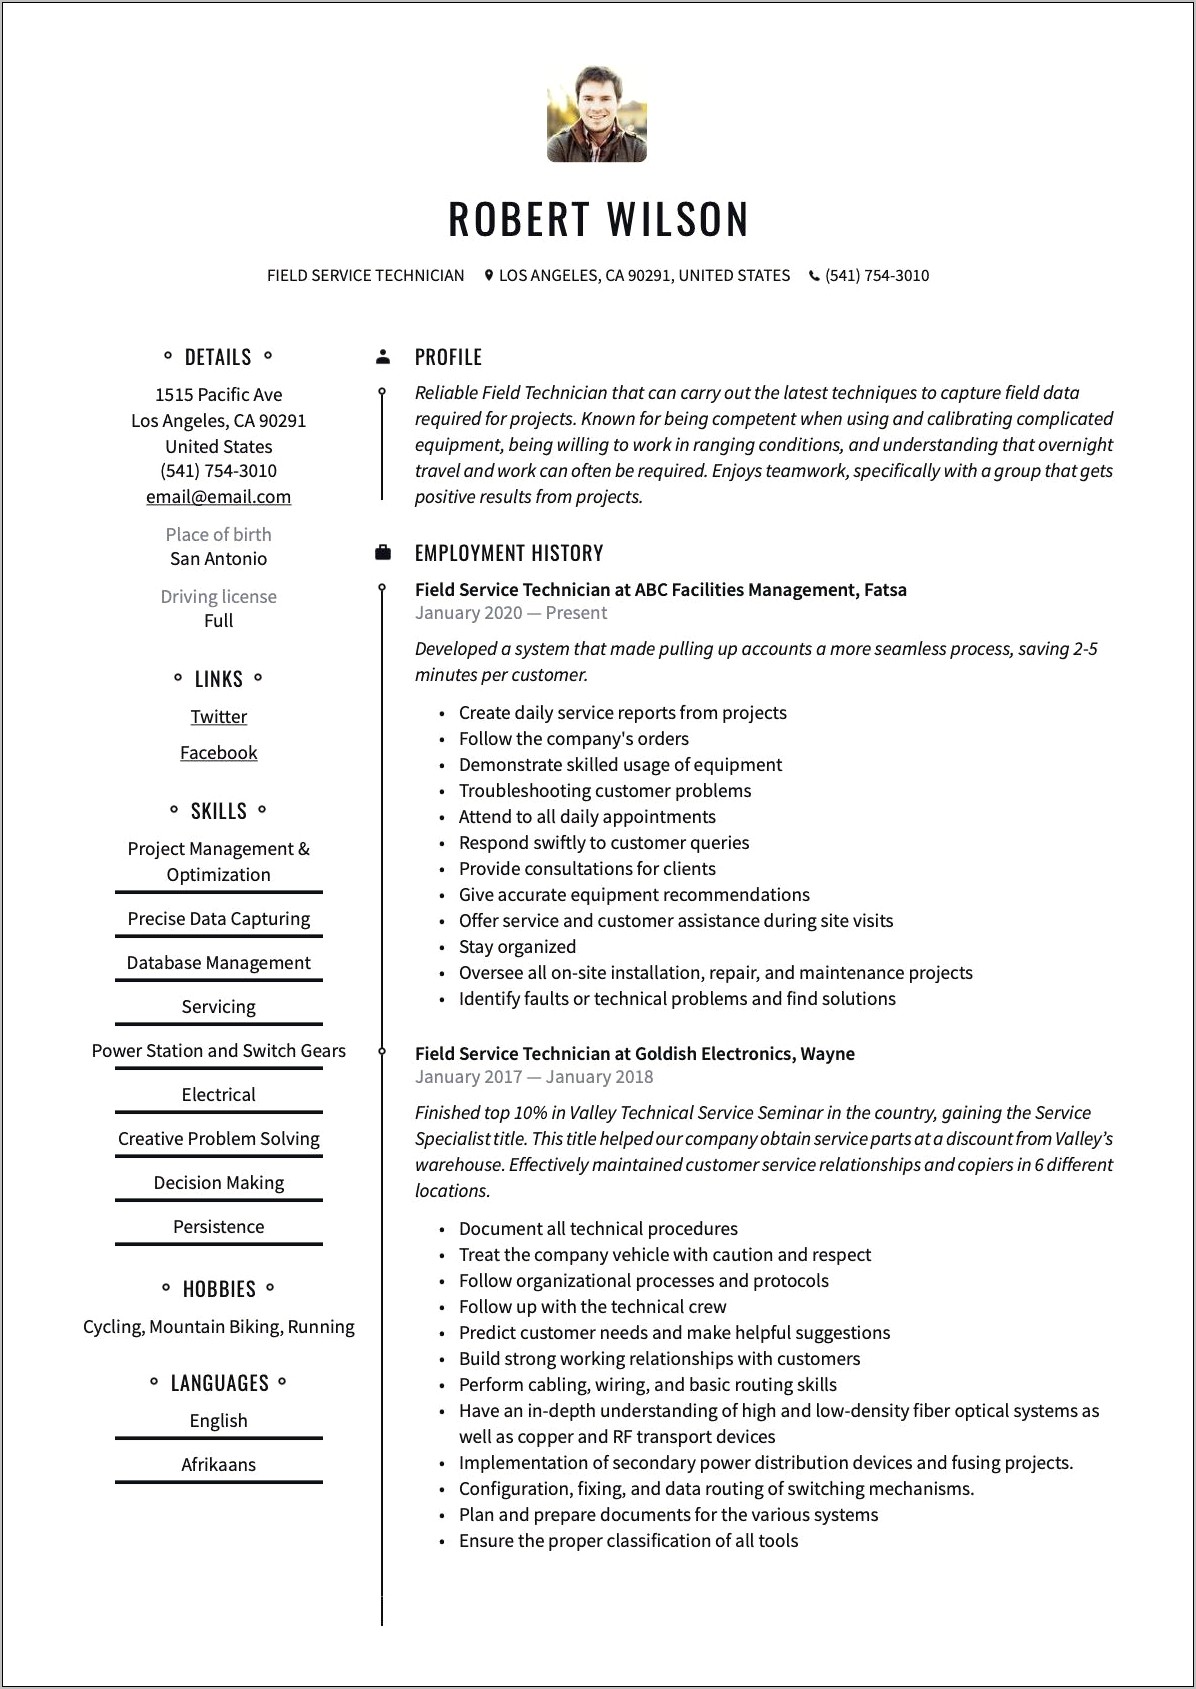 Field Service Technician Job Description Resume